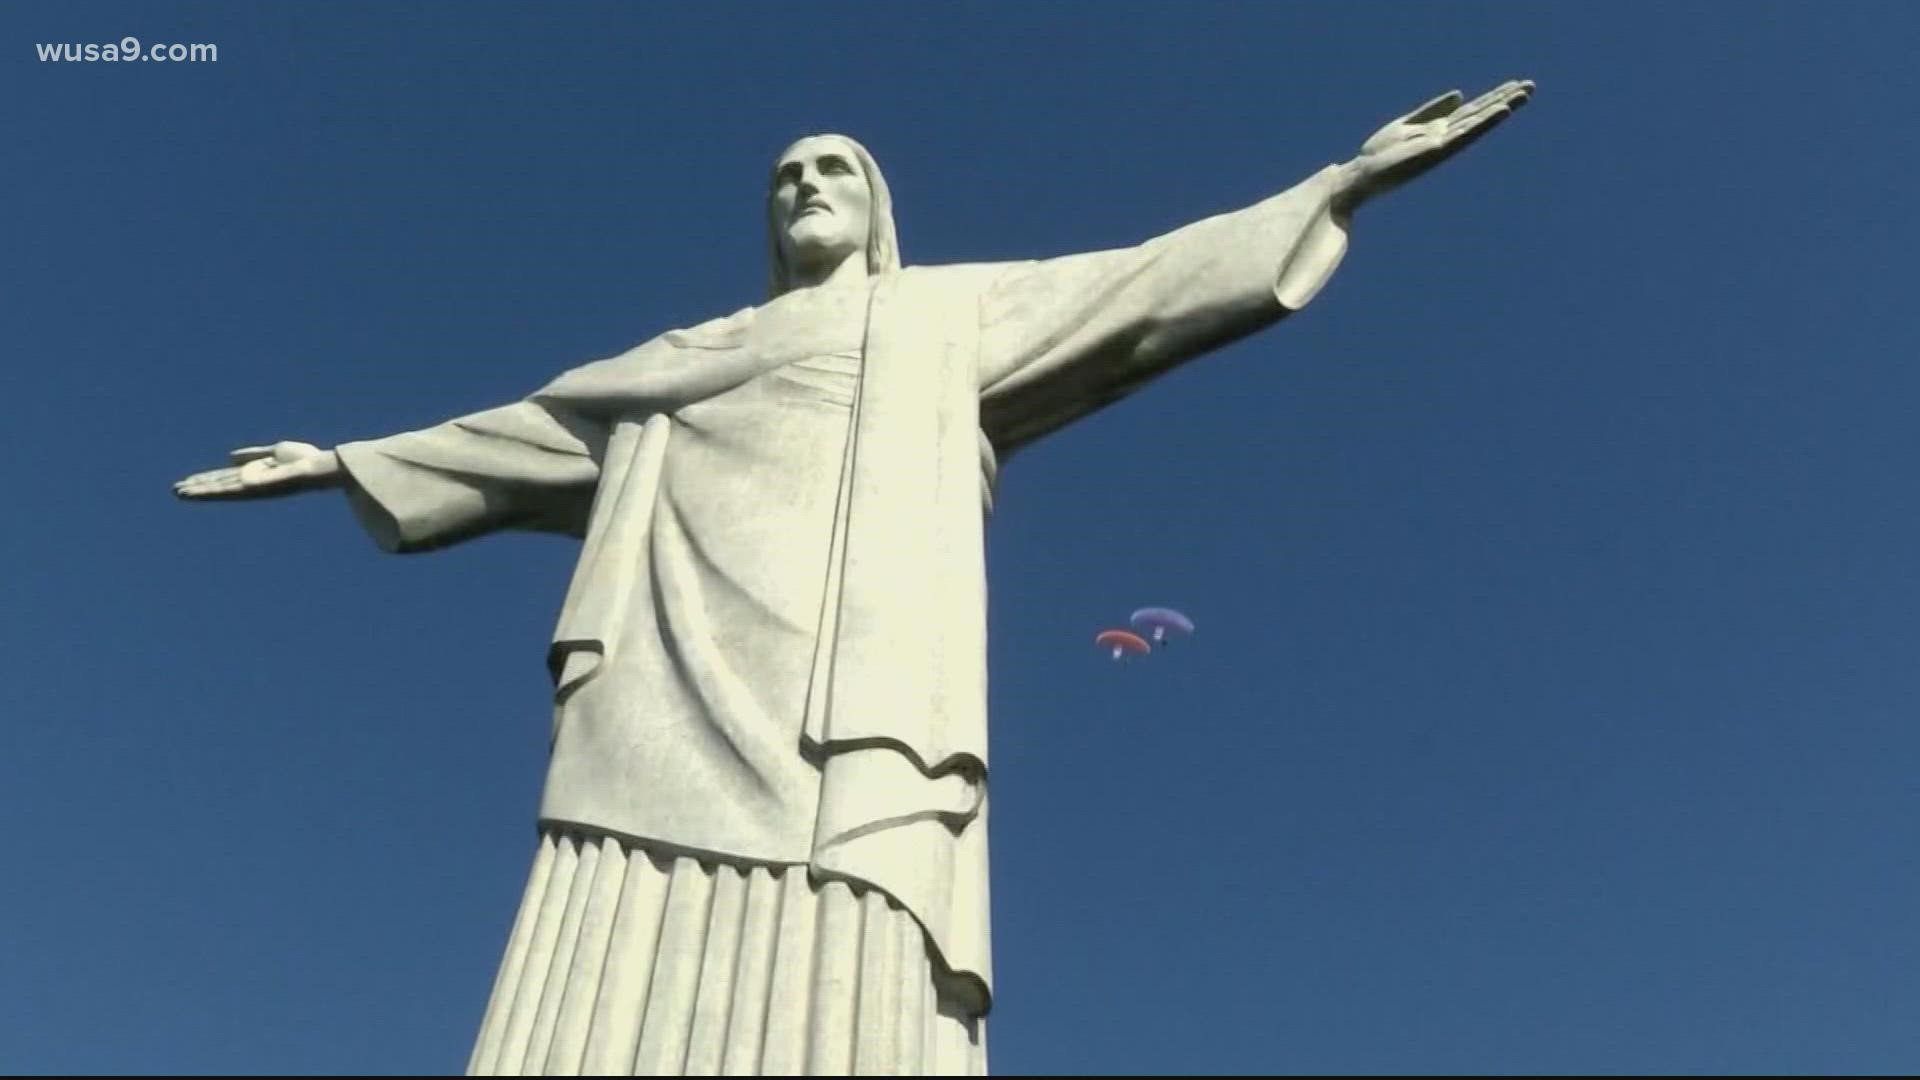 The statue is a hallmark of Brazilian culture.